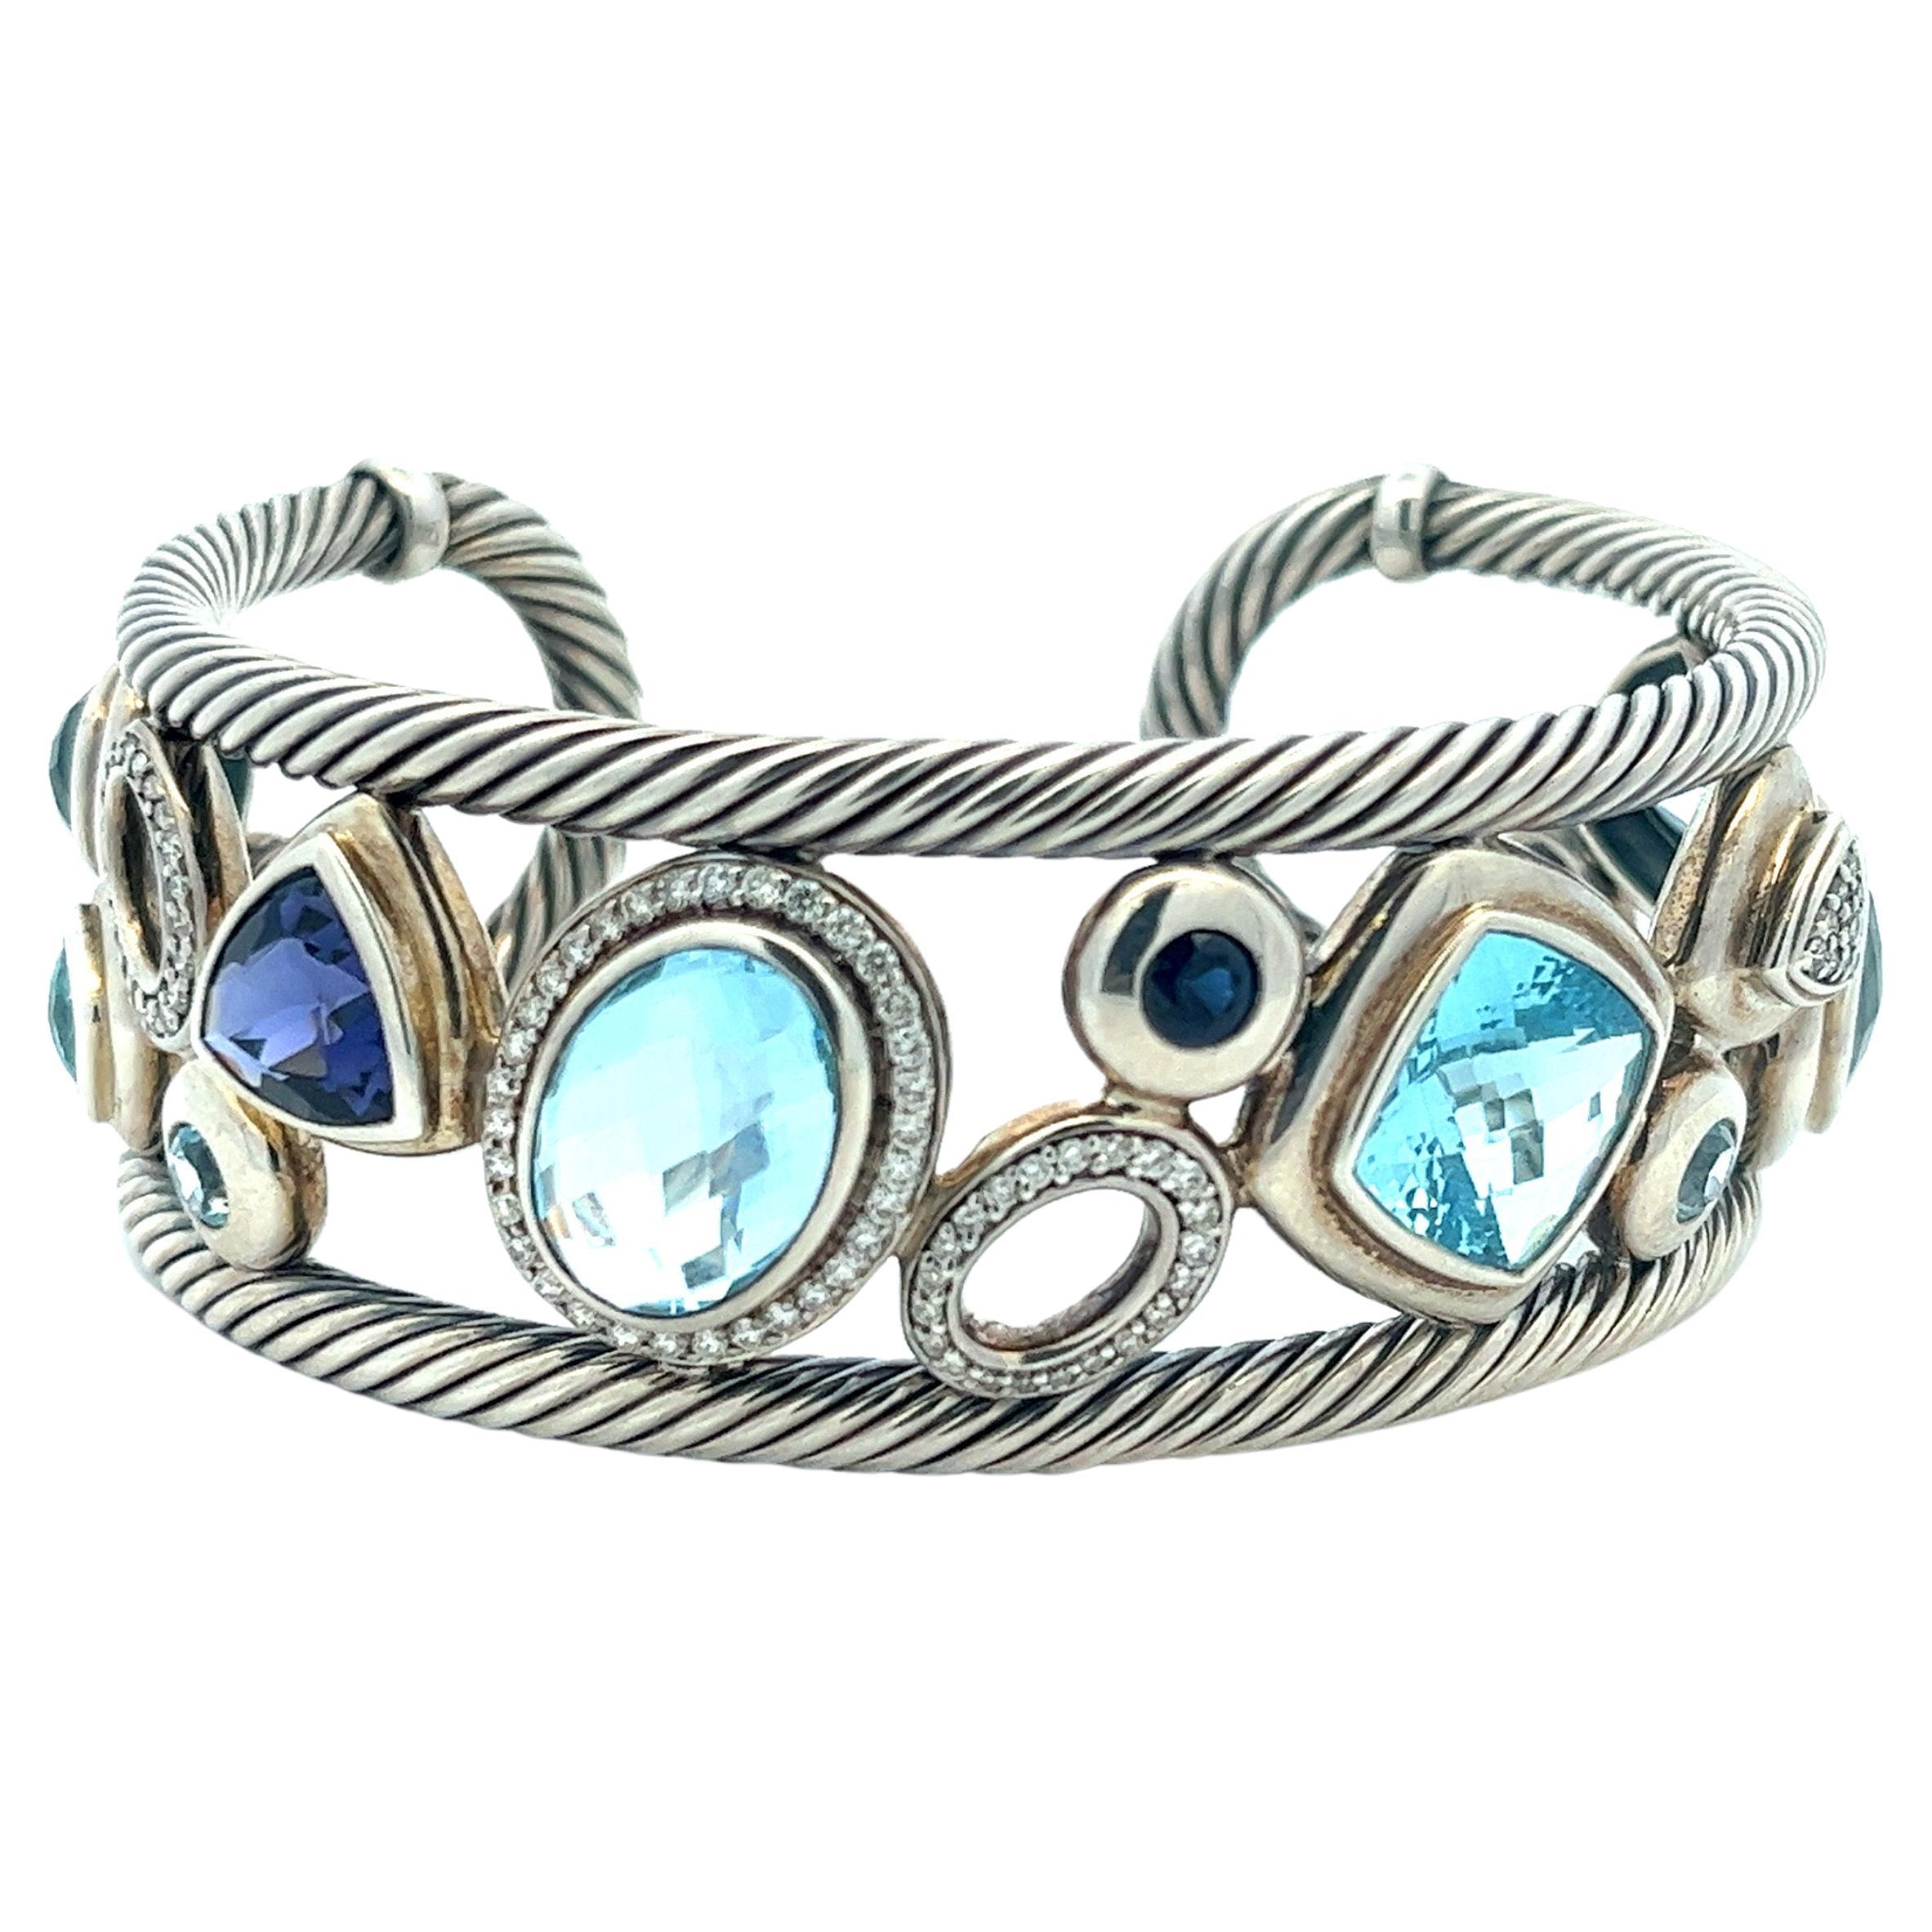 Modernist David Yurman Blue Oval Mosaic Cuff Bracelet in Sterling Silver 925